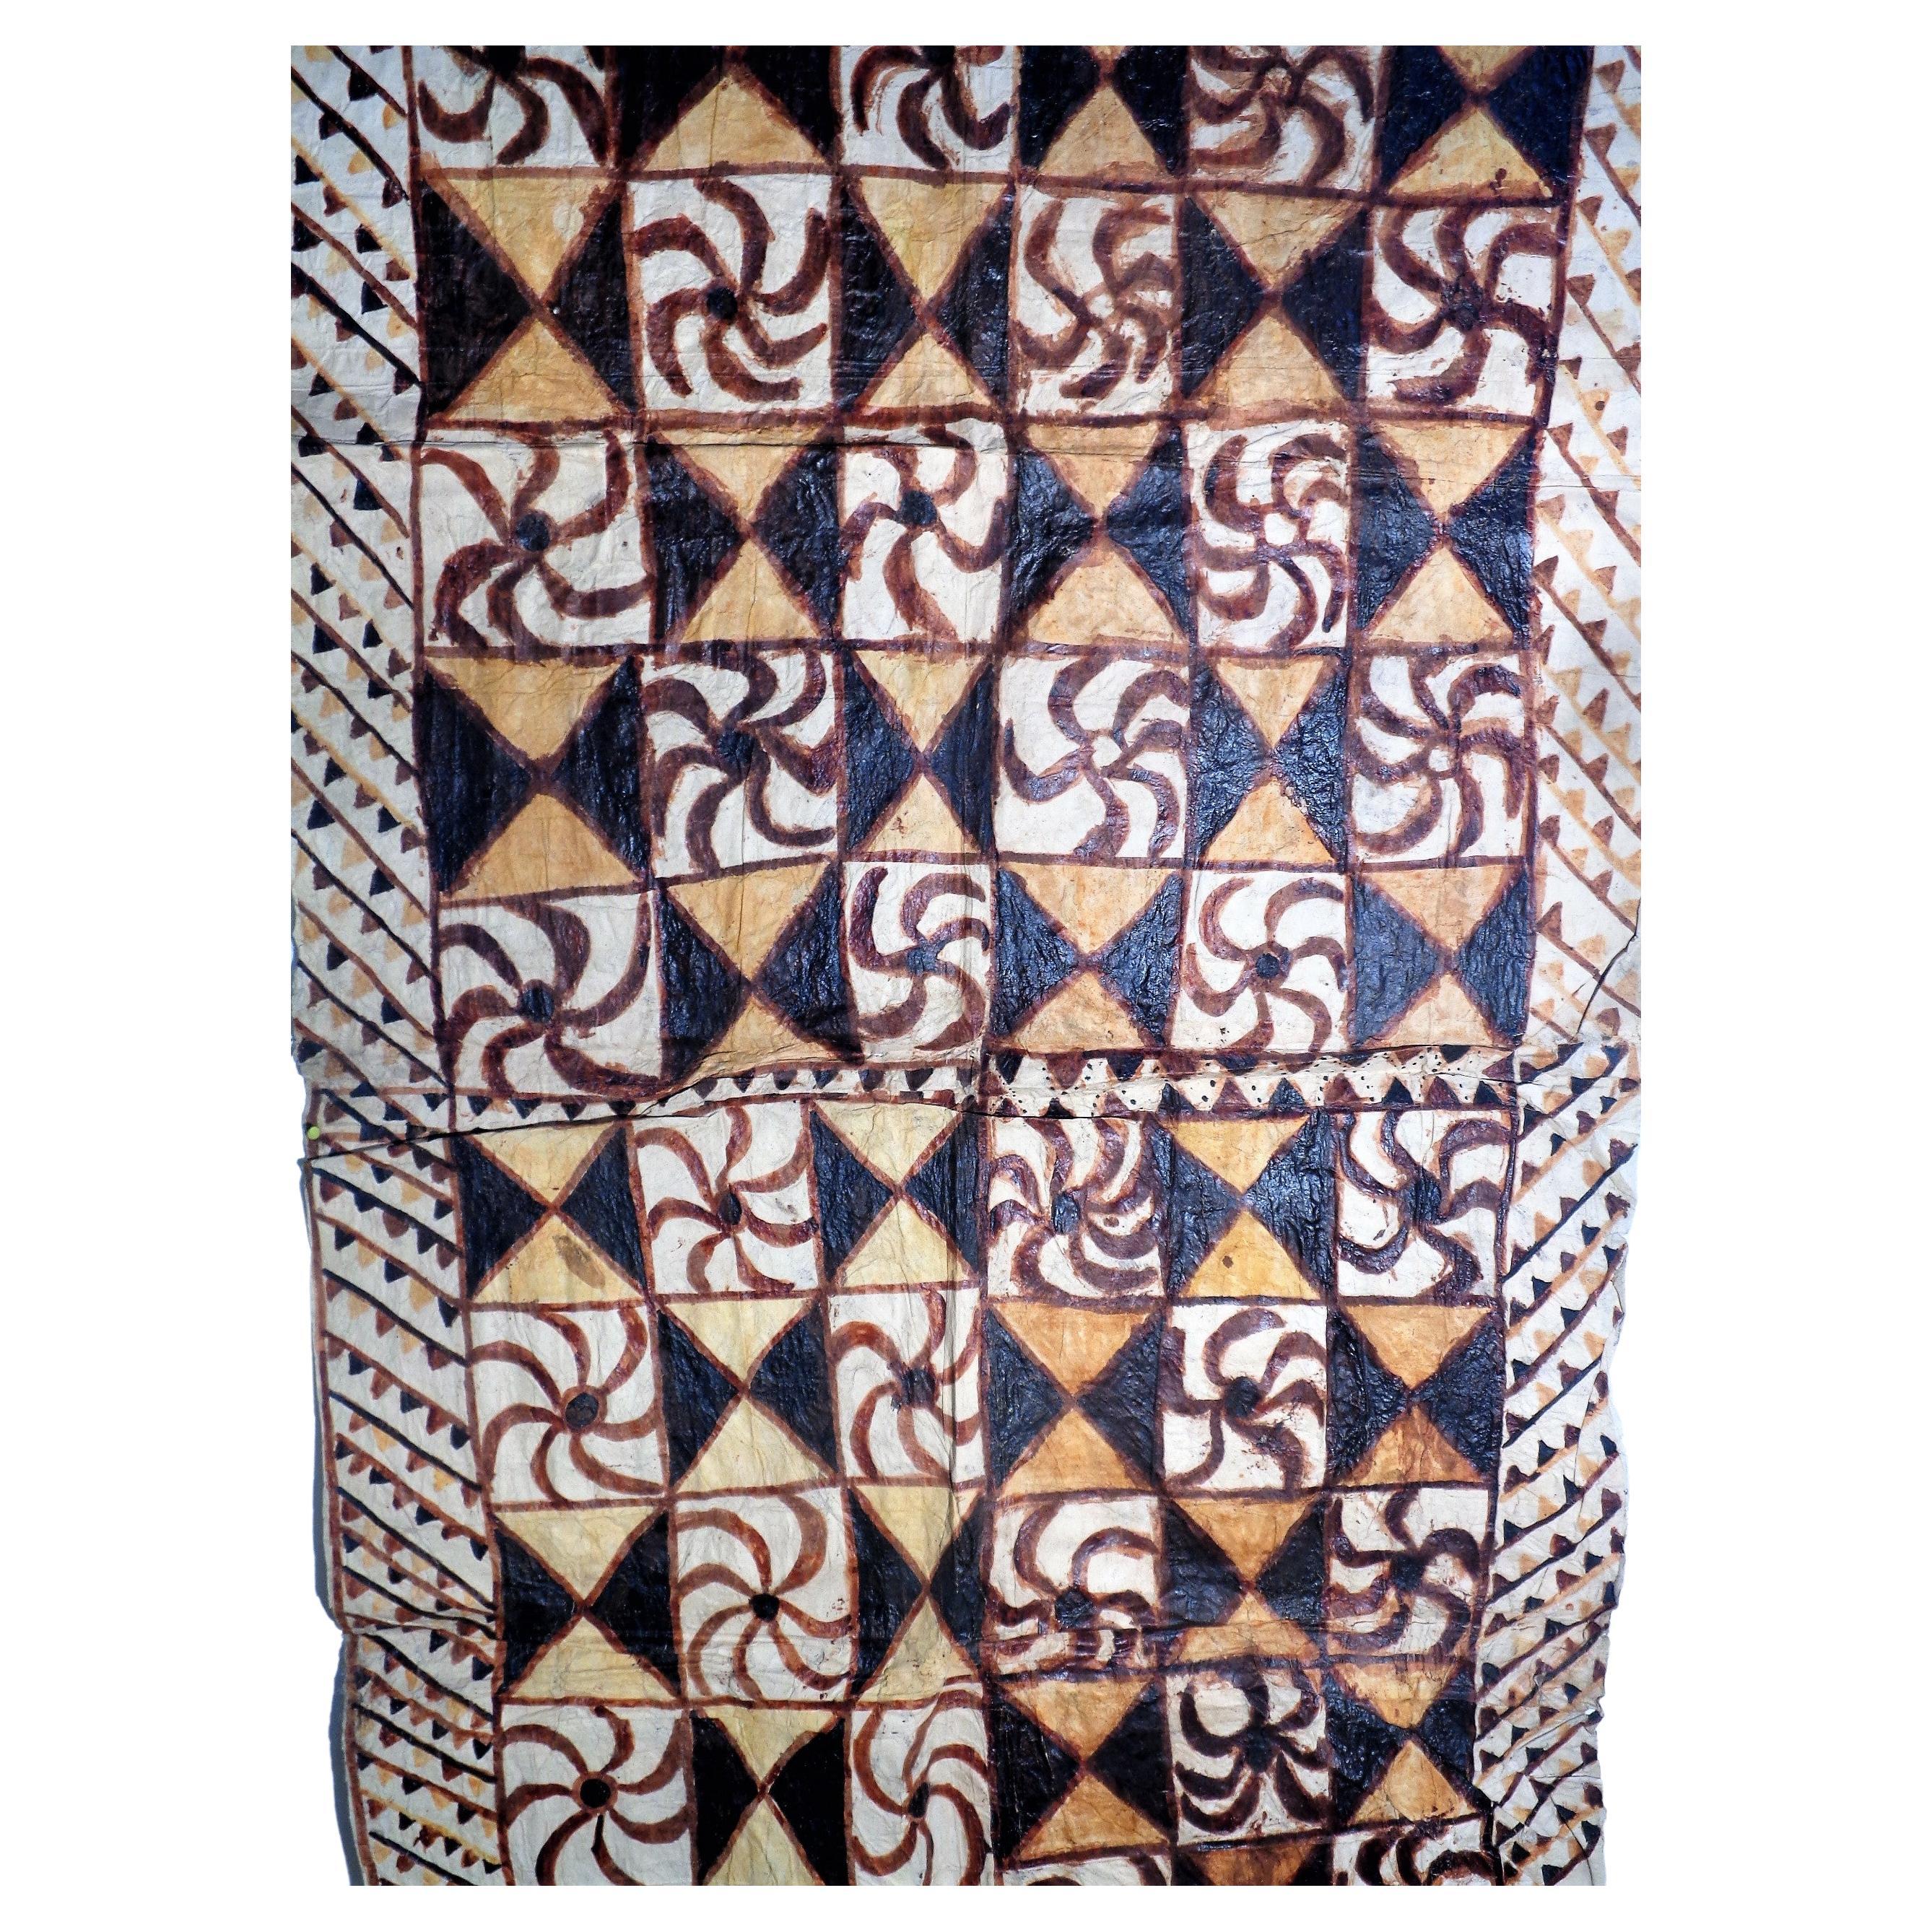 Tissu Siapo ( `tapa ) de Samoa du 19ème siècle fabriqué à partir de l'écorce interne d'un mûrier / peinture à main levée décorée ( Siapo Mamanu ) avec des teintures naturelles provenant de plantes, d'arbres et d'argiles. Ce grand tissu tapa est